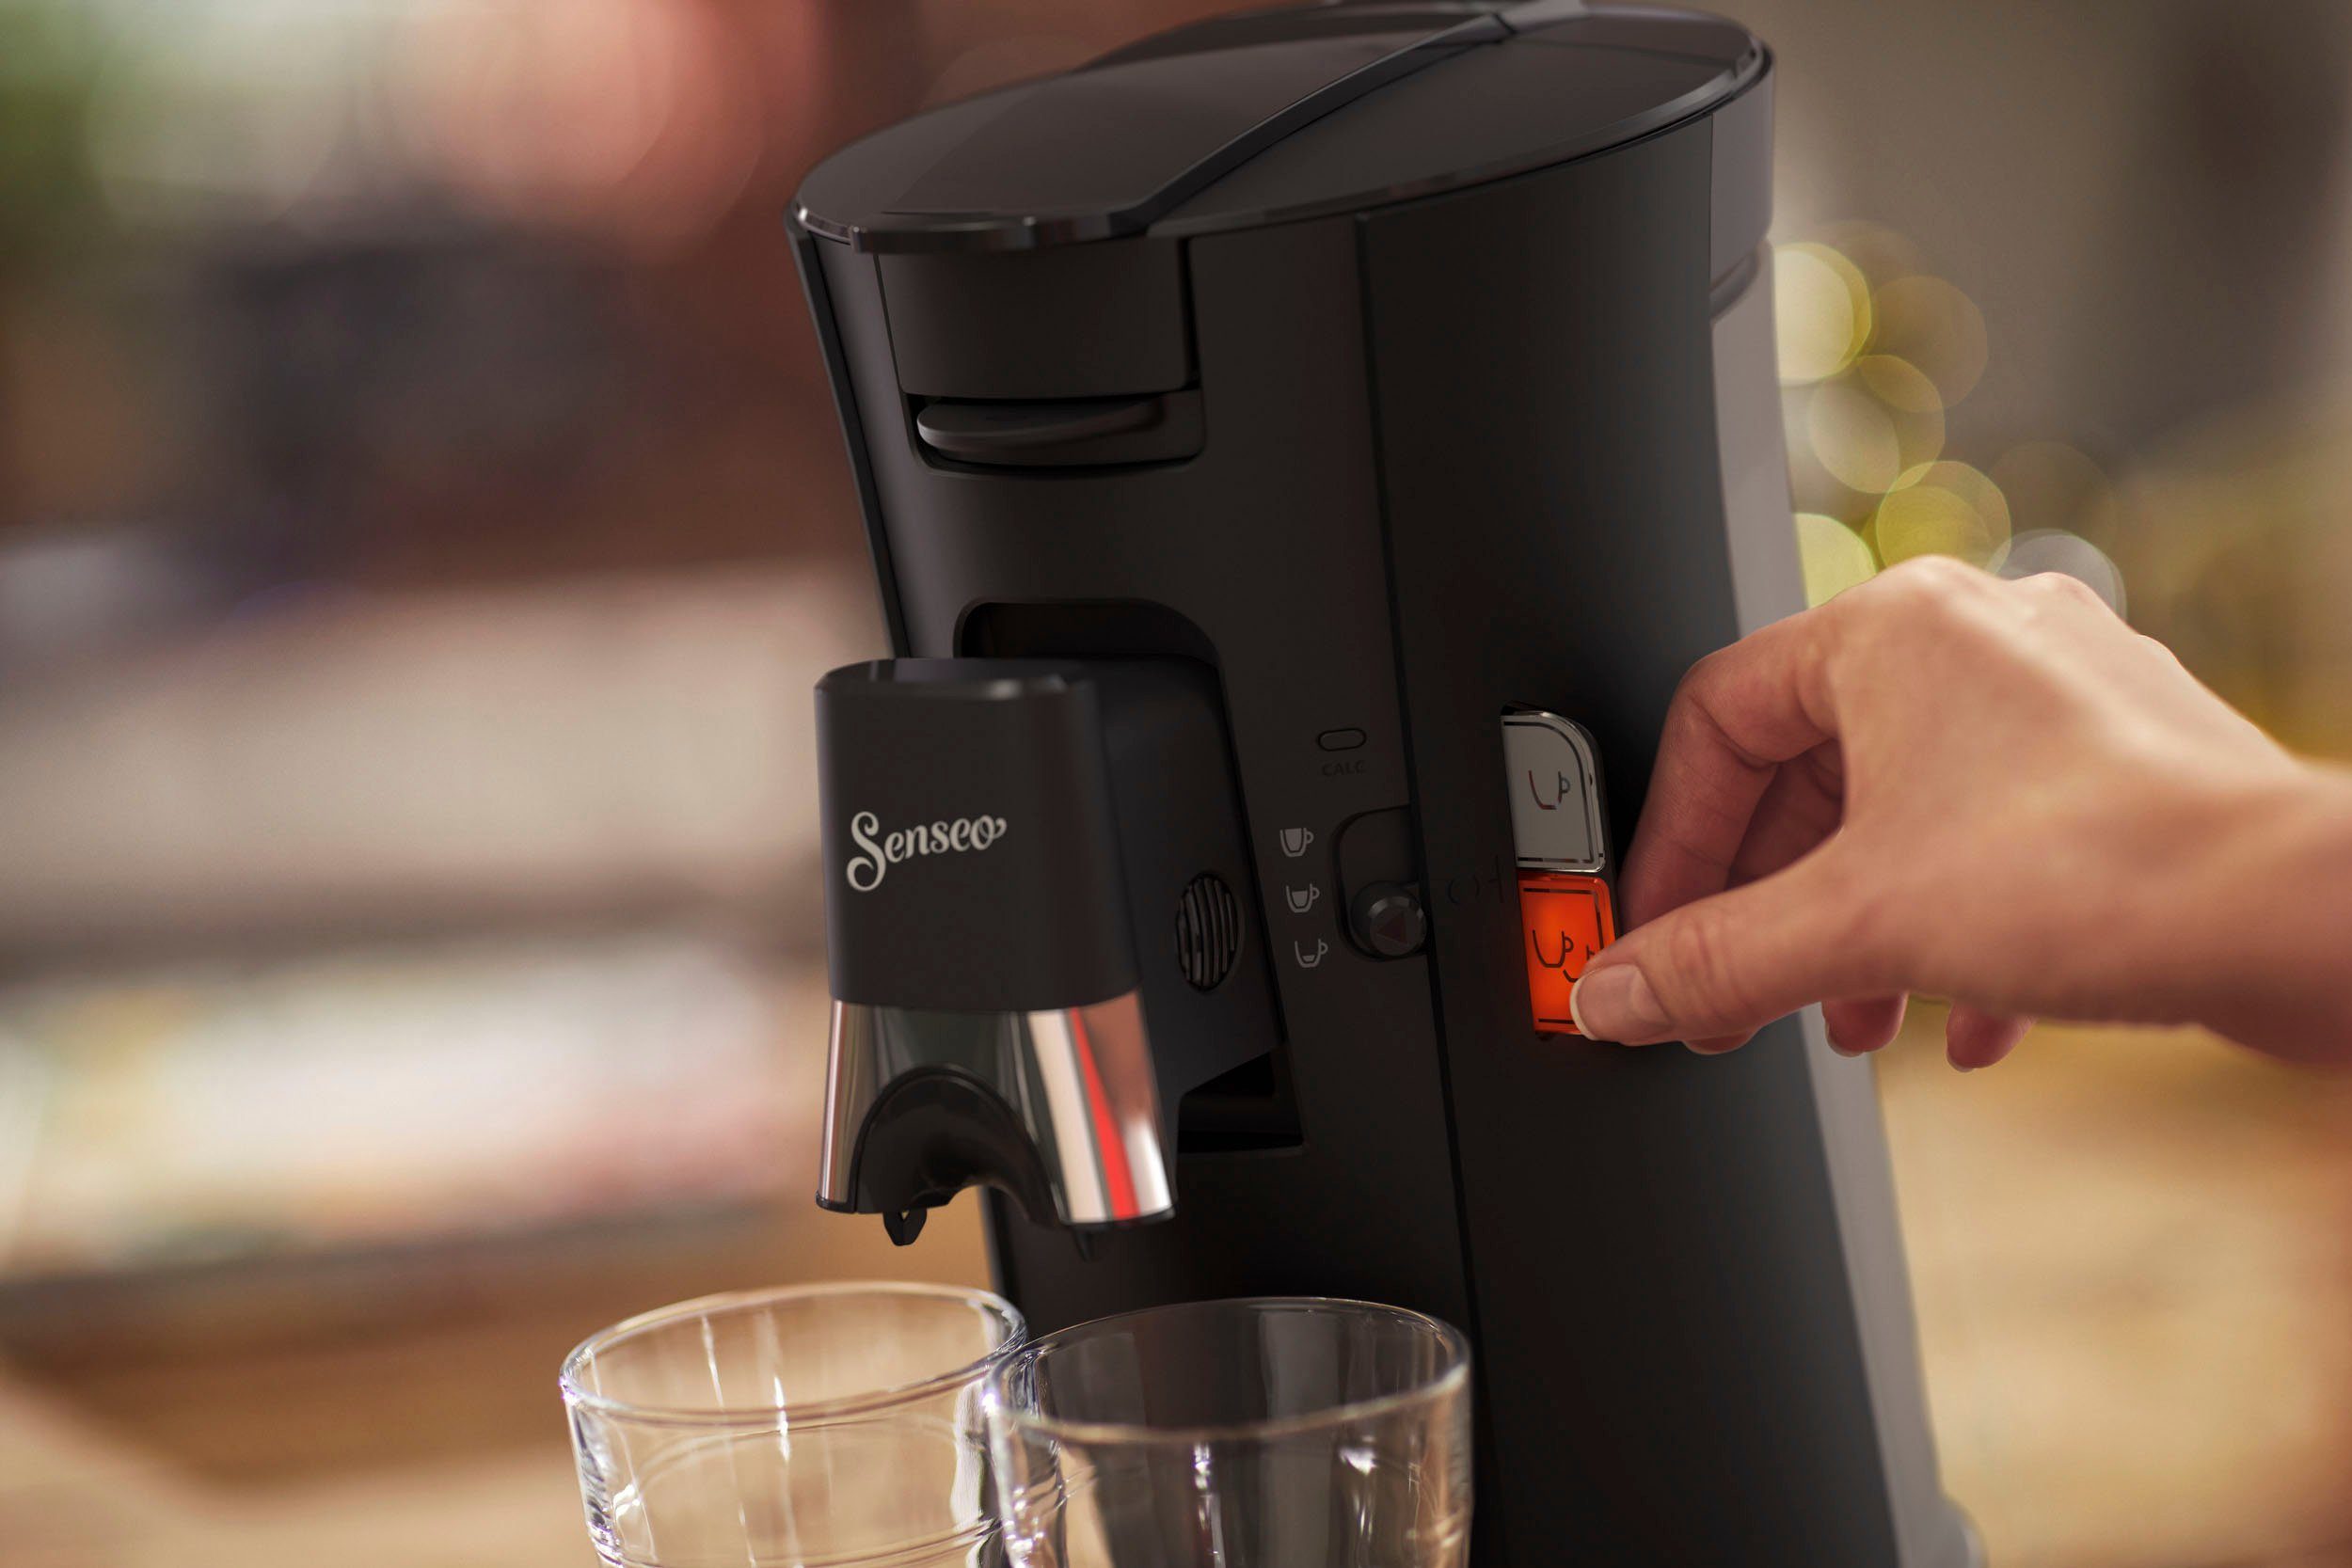 Philips Senseo Kaffeepadmaschine Select Plastik, max.33 Kaffeespezialitäten, Pads recyceltem Crema 21% zurückerhalten kaufen Plus, CSA230/69, +3 aus 100 und Senseo und € bis